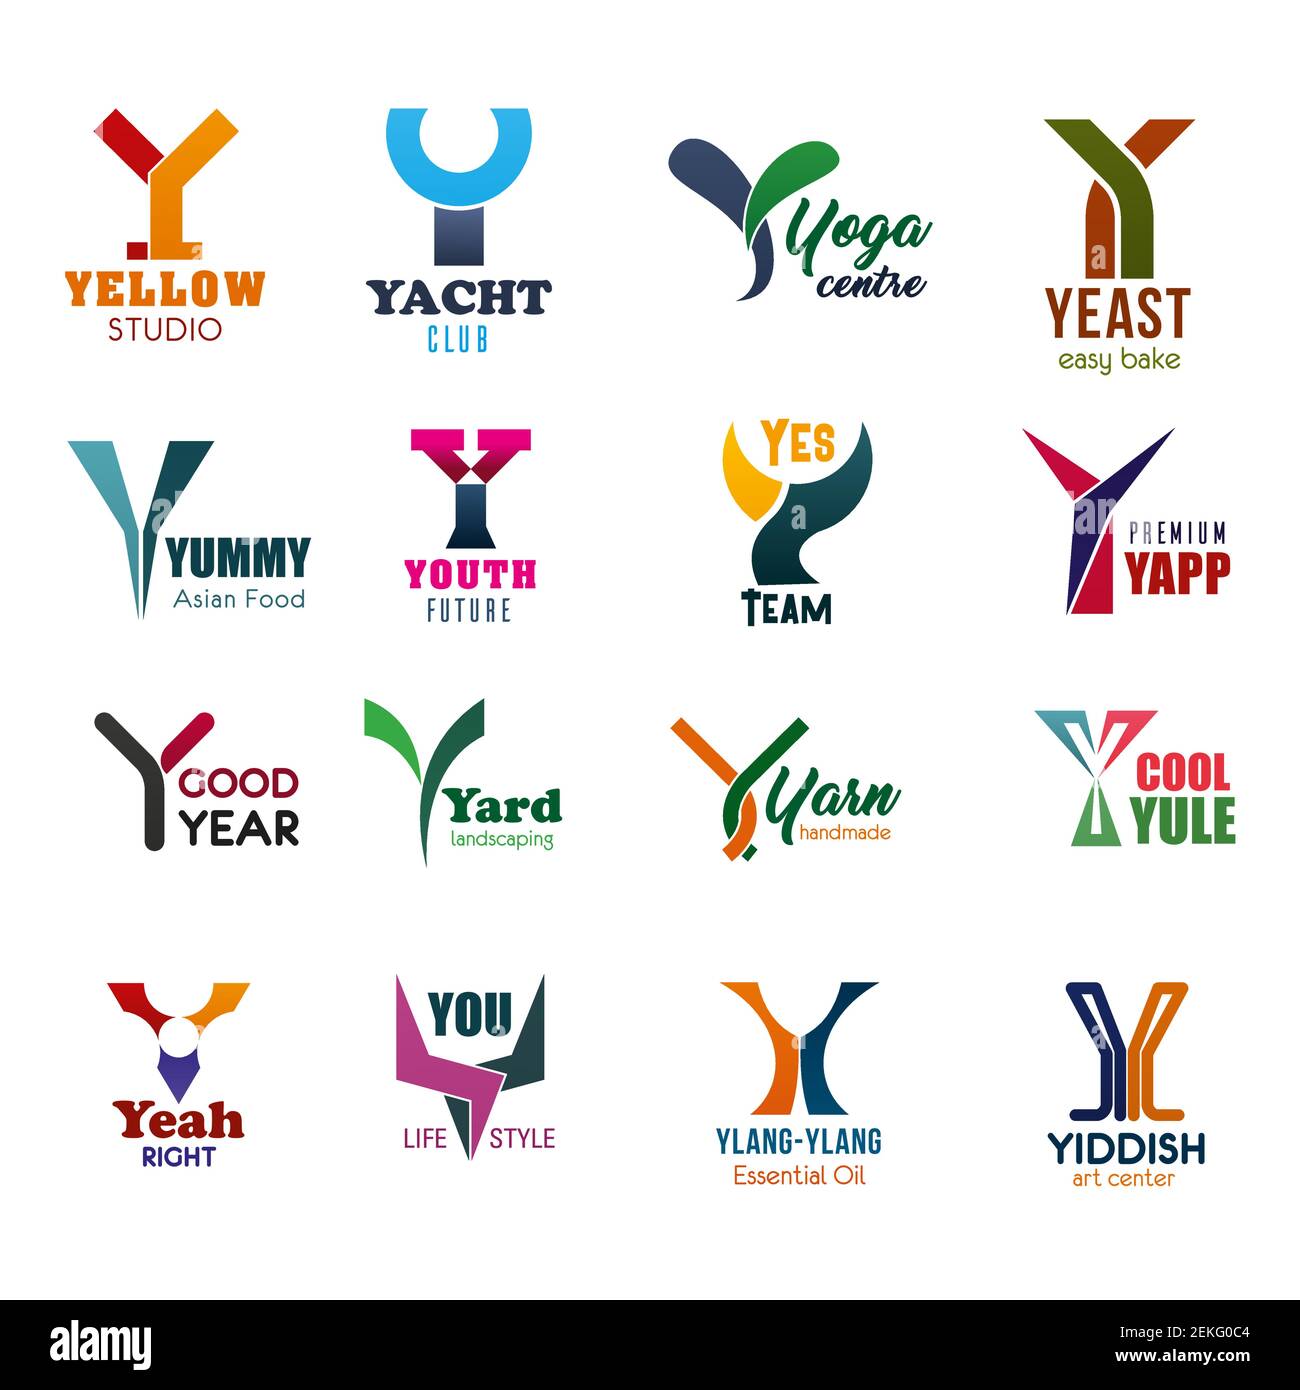 Icone di lettera Ybusiness per il branding. Giallo e yacht, yoga e lievito, yummy e giovani, sì e yapp, anno e cantiere, yule e yeah, tu e ylang ylan Illustrazione Vettoriale